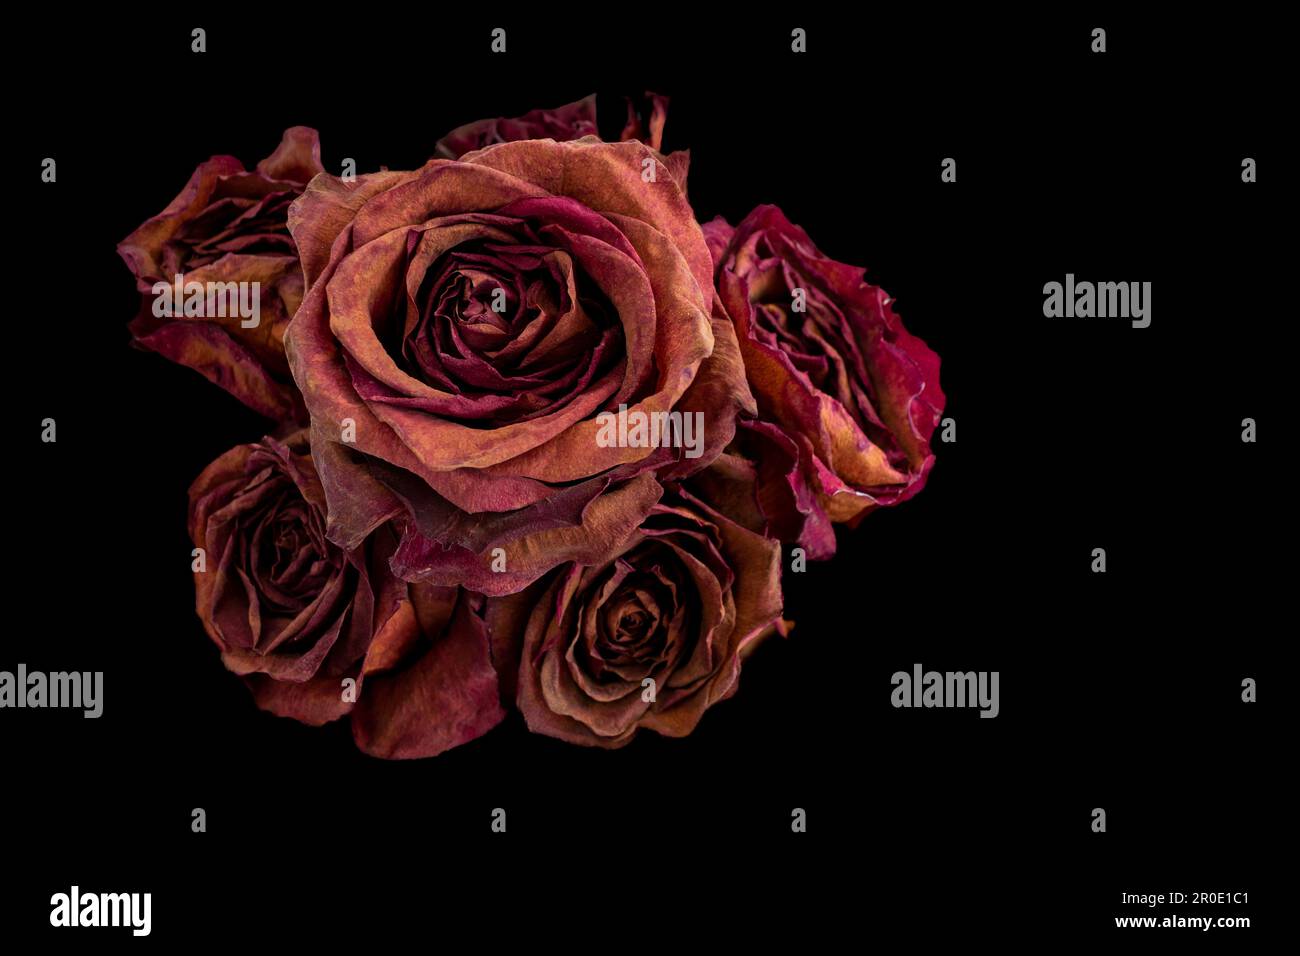 Strauß getrockneter roter Rosen auf schwarzem Hintergrund. Das Konzept der Zeit, des Alterns, der Schönheit des menschlichen Wesens ist nicht ewig. Stockfoto